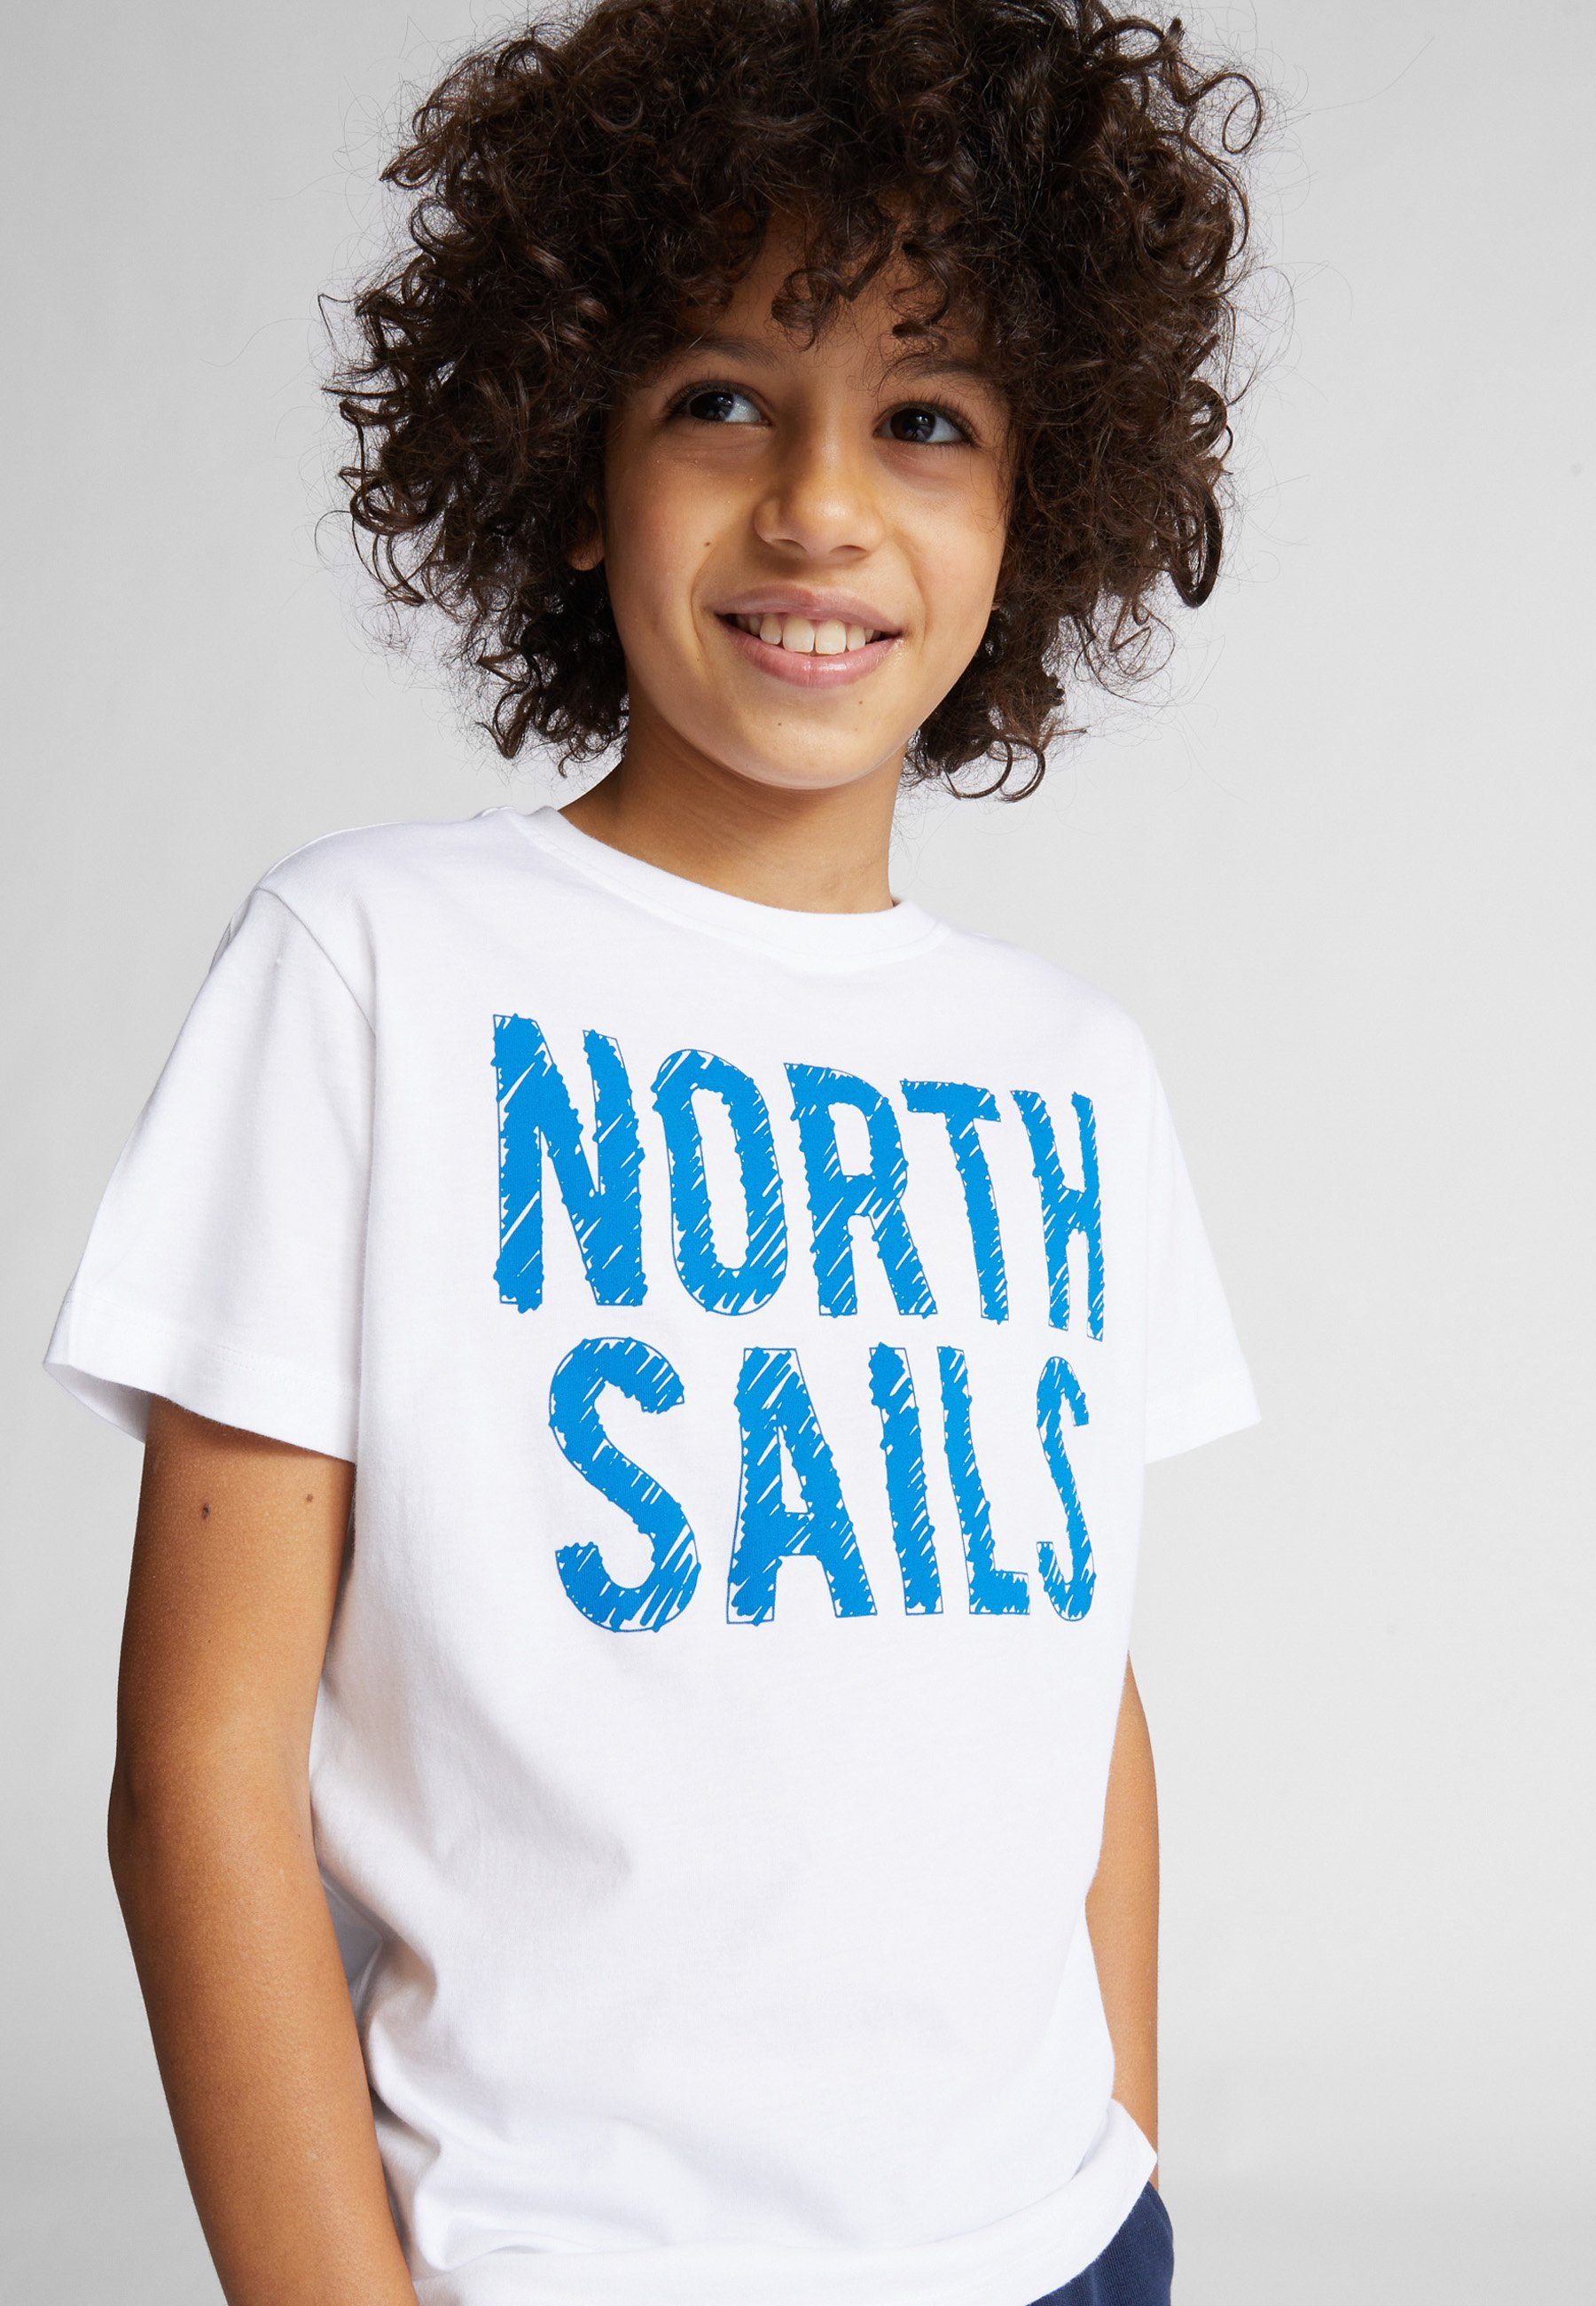 North Sails T-Shirt weiss Baumwoll-Jersey-T-Shirt